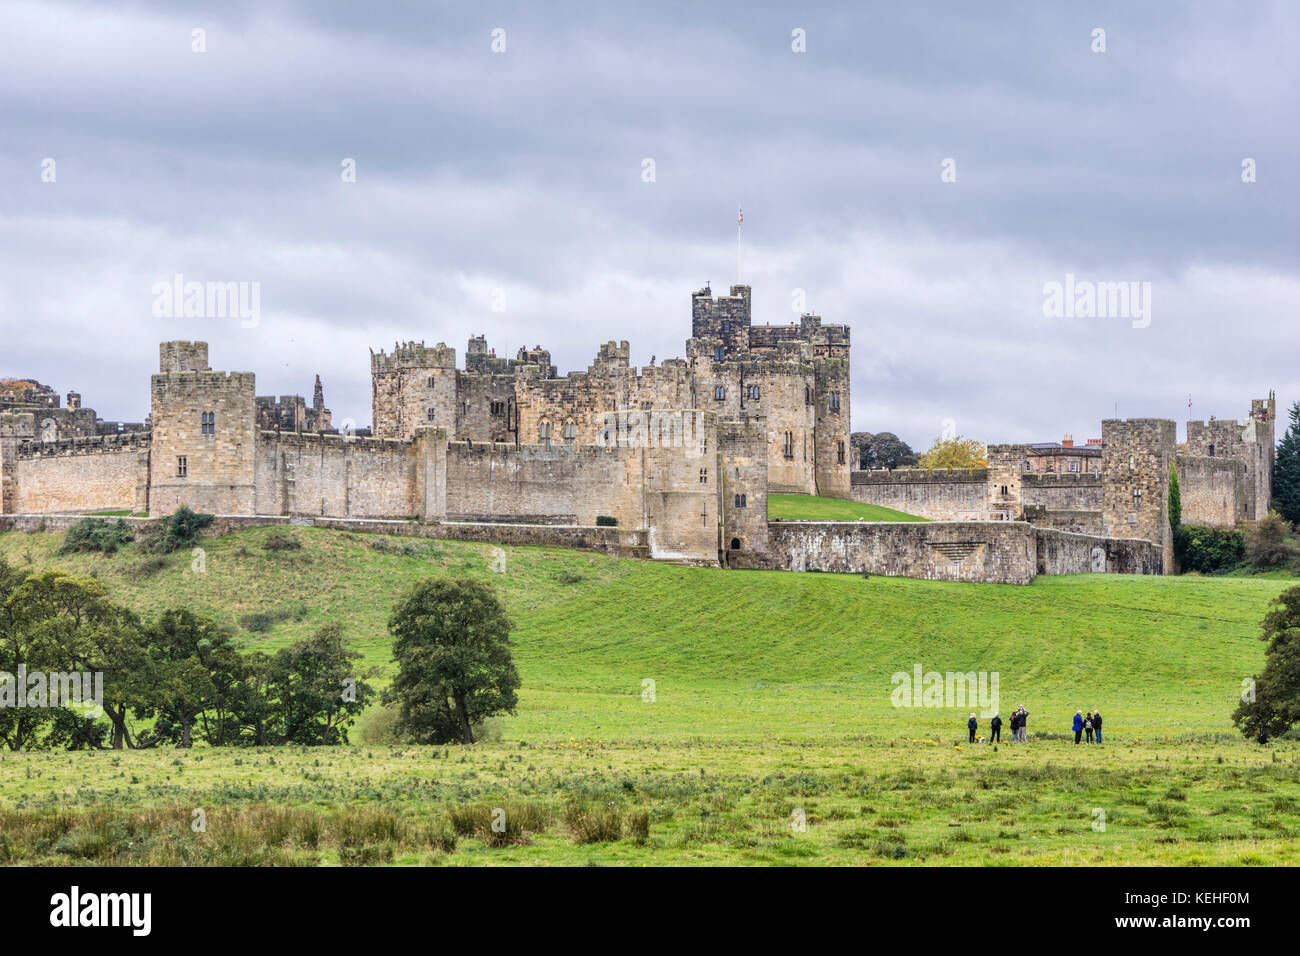 Alnwick Castle, Alnwick, Northumberland, England, UK Stock Photo